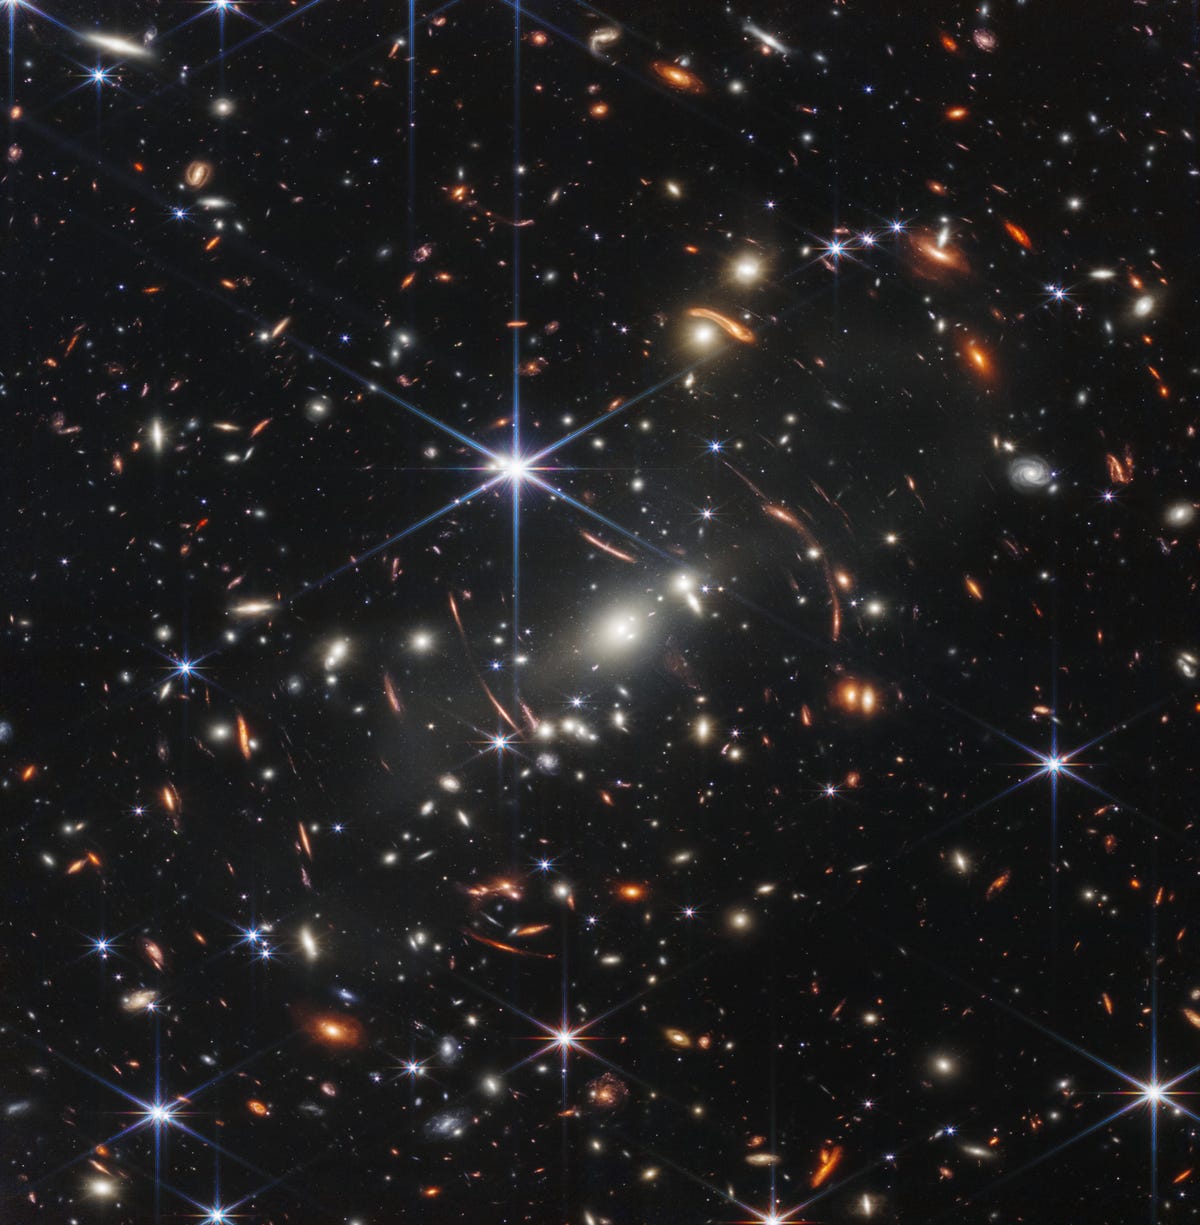 Bidang ribuan galaksi melawan kegelapan ruang dengan bintang besar berujung enam berwarna biru.